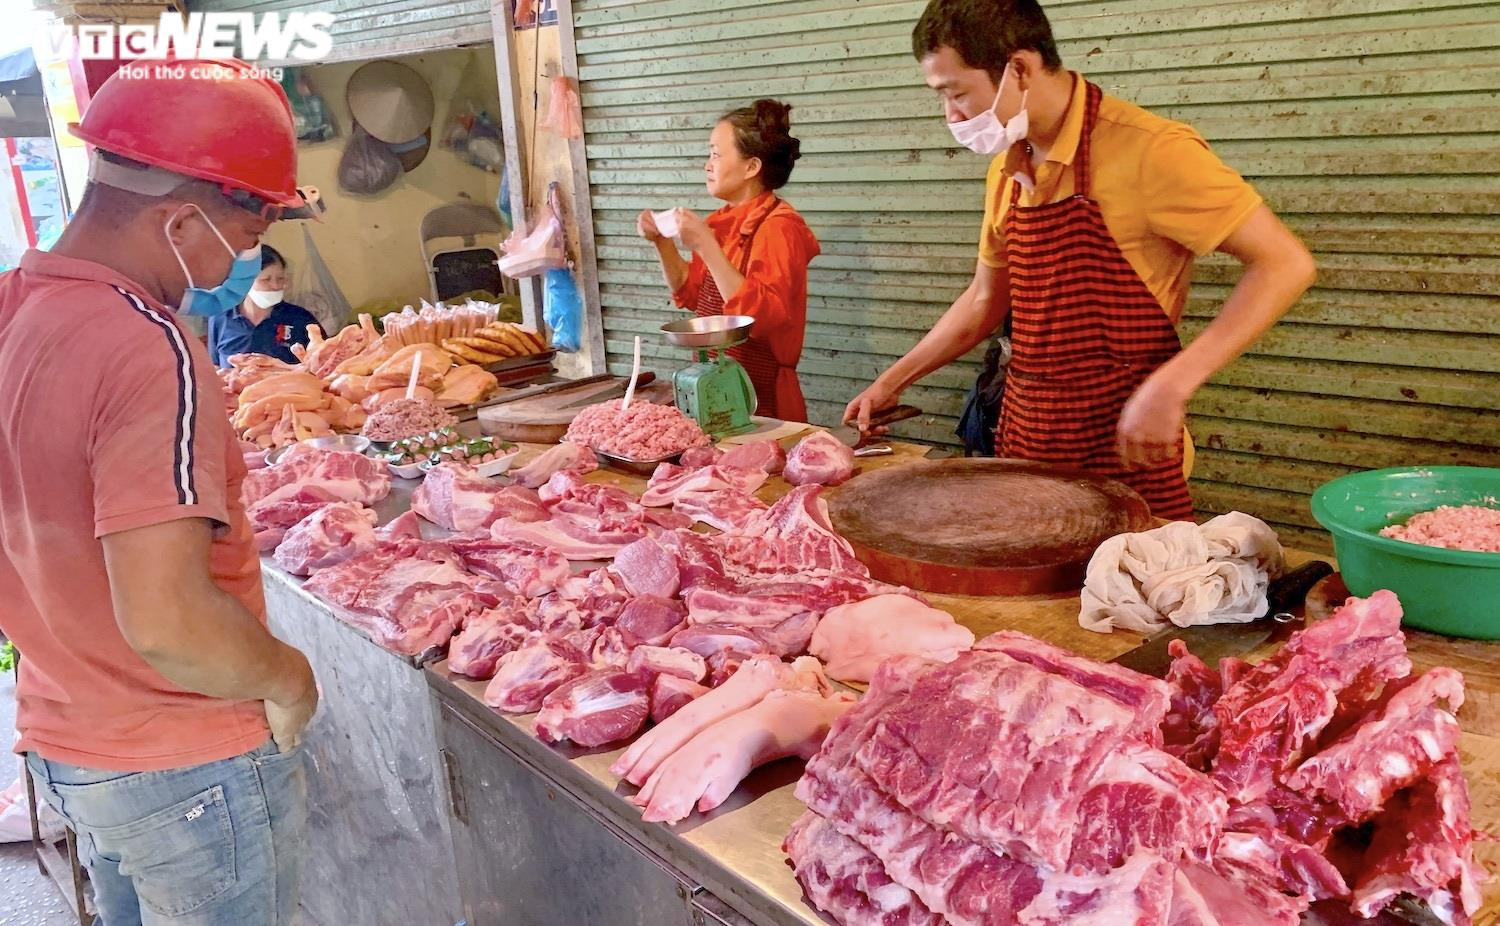 Giá thịt heo ở chợ bật tăng: Tuyệt chiêu che mắt khách của người bán - 1